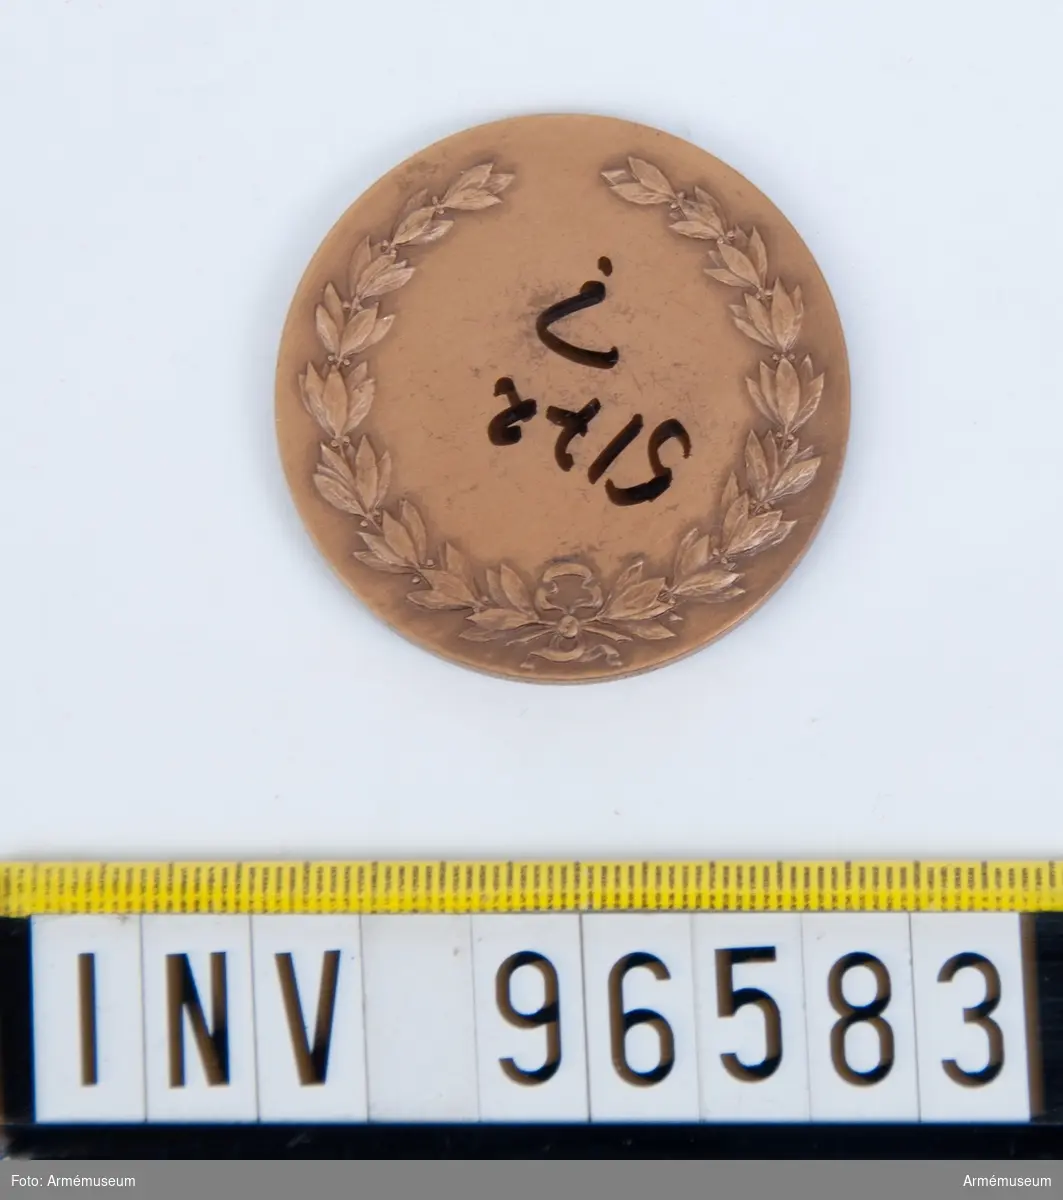 Medalj i brons för Skånska kavalleriregementet.
Stans 20963, härdad 1949-09-08.
Medalj, åtsida med strålformig stjärna med 2 regementsfanor, den ena med skånska gripen samt inskr. LANDSKRONA 1677, PULTUSK 1703, POSEN 1704, FRAUSTADT 1706, med tre kronor krönt av kungl. krona som fanspets. Den andra med svärd och kunglig krona samt 4-armat kors jämte inskr. BORNHÖFT D. 7 DEC. 1813 samt med kronor i hörnen med Gustaf V:s namnchiffer som fanspets, inom omskrift KUNGL. SKÅNSKA KAVALLERIREGEMENTET. Modell: Åke Hammarberg.